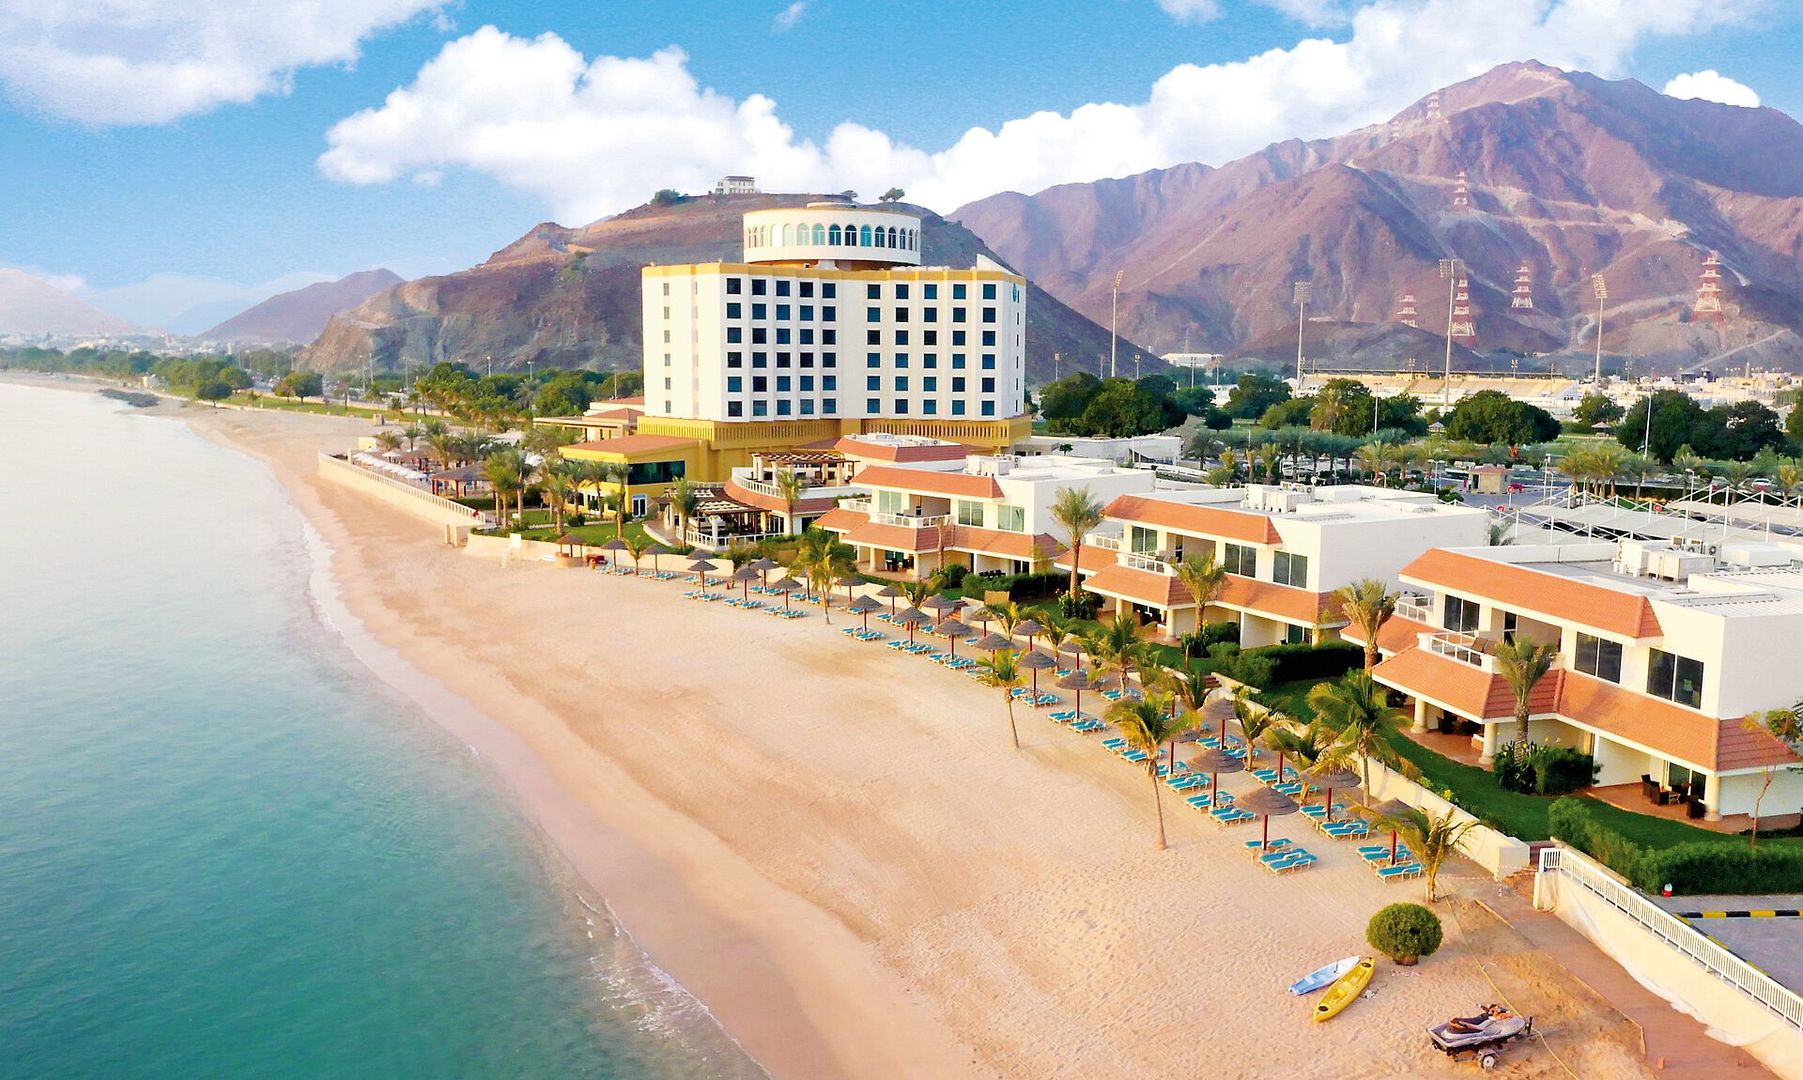 Oceanic Khorfakkan Resort & Spa